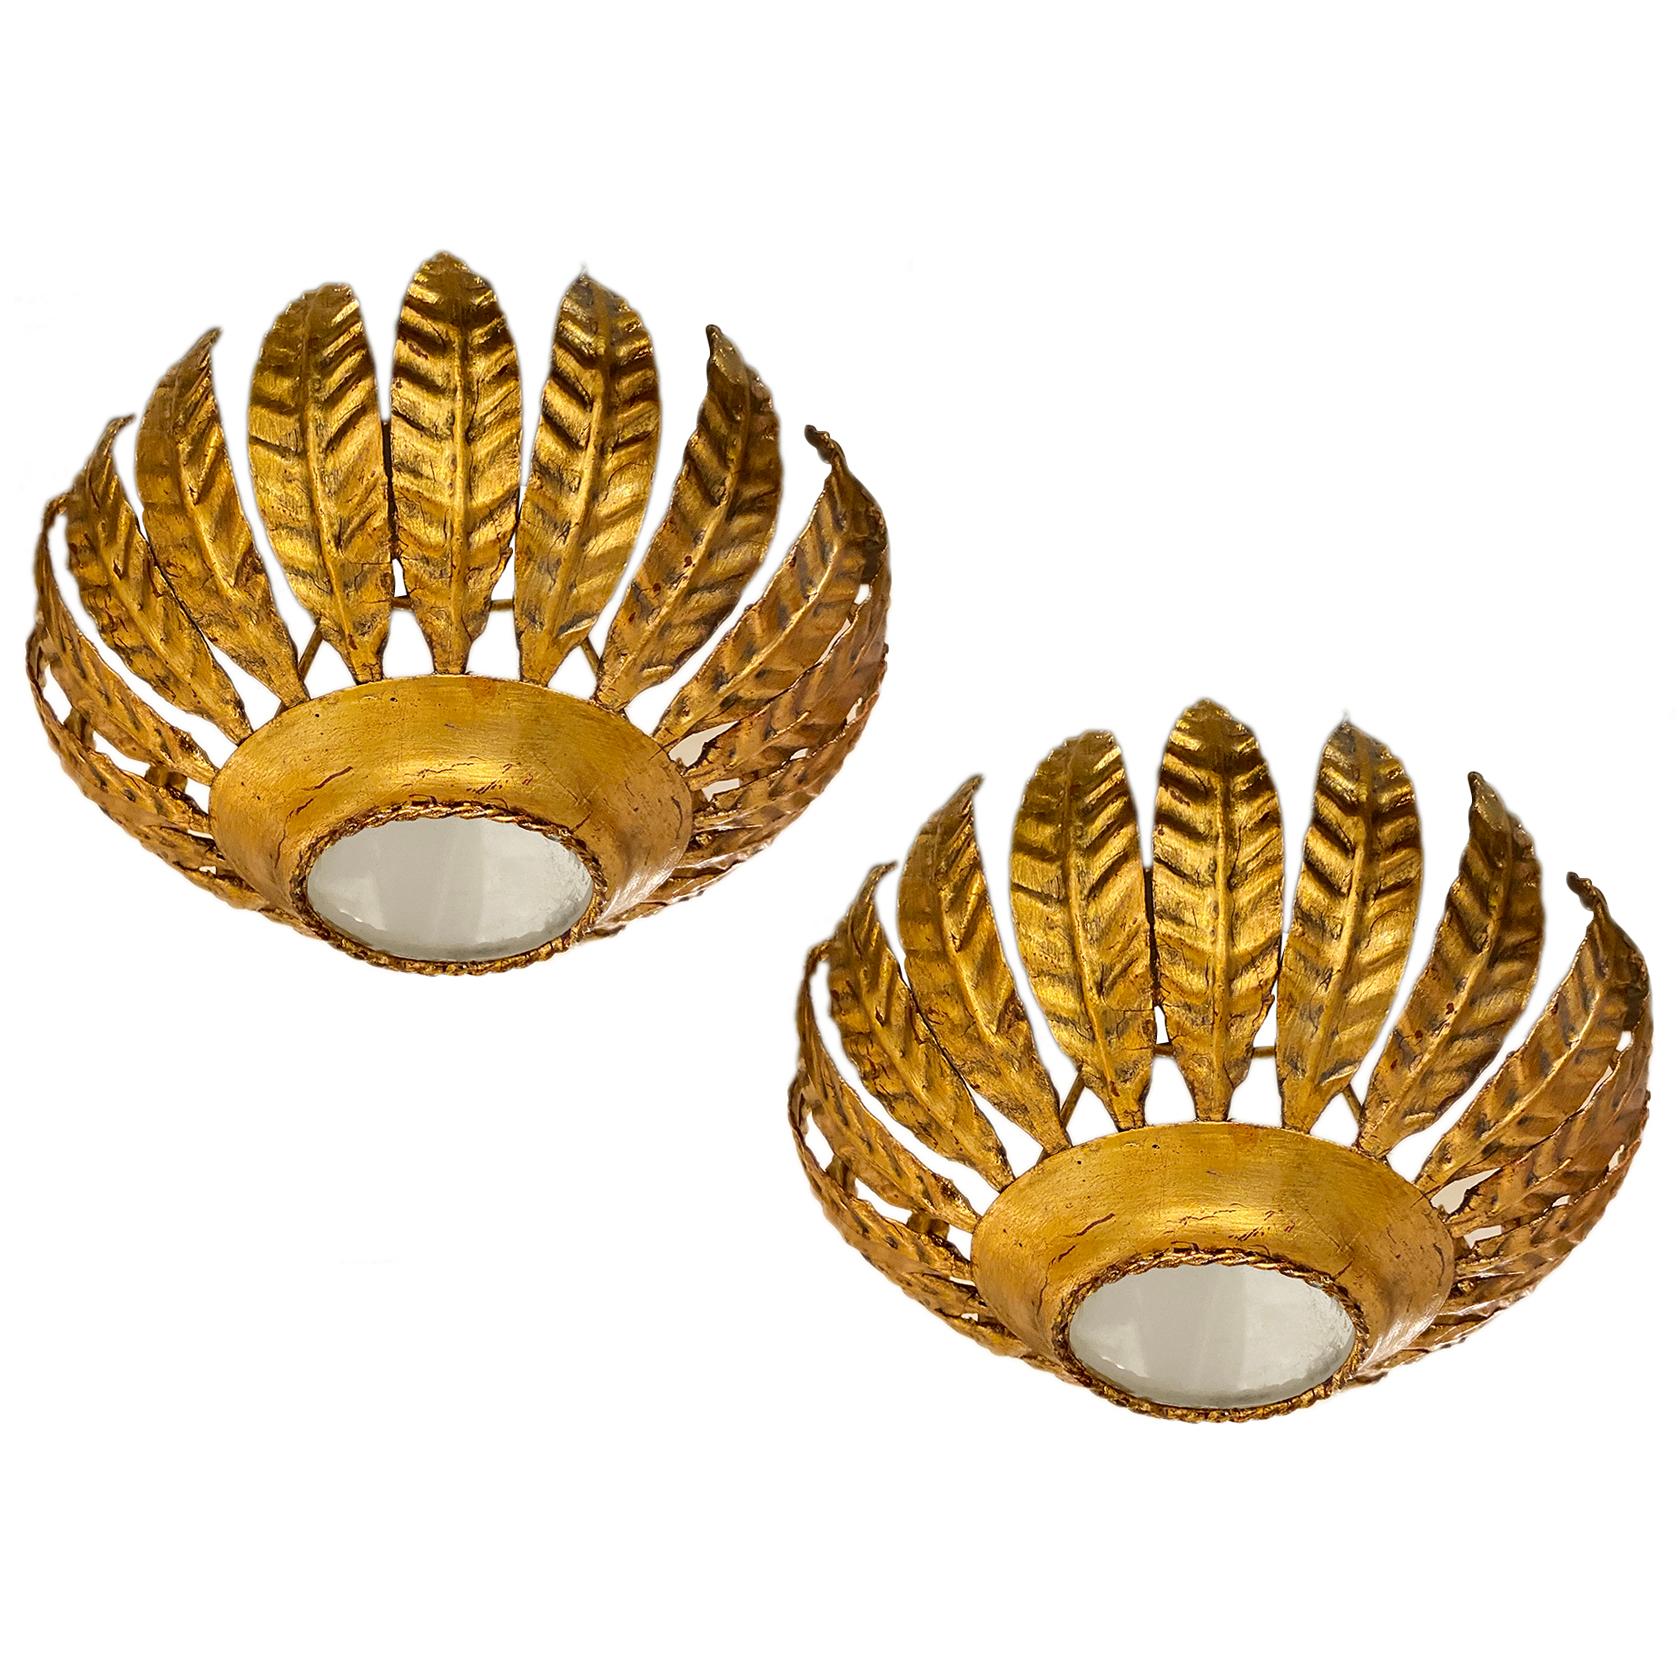 Ein Satz von sechs italienischen ca. 1930er Jahre vergoldetes Metall Licht Sonnenschliff Leuchten mit Innenbeleuchtung. Einzelverkauf.

Abmessungen:
Höhe 11